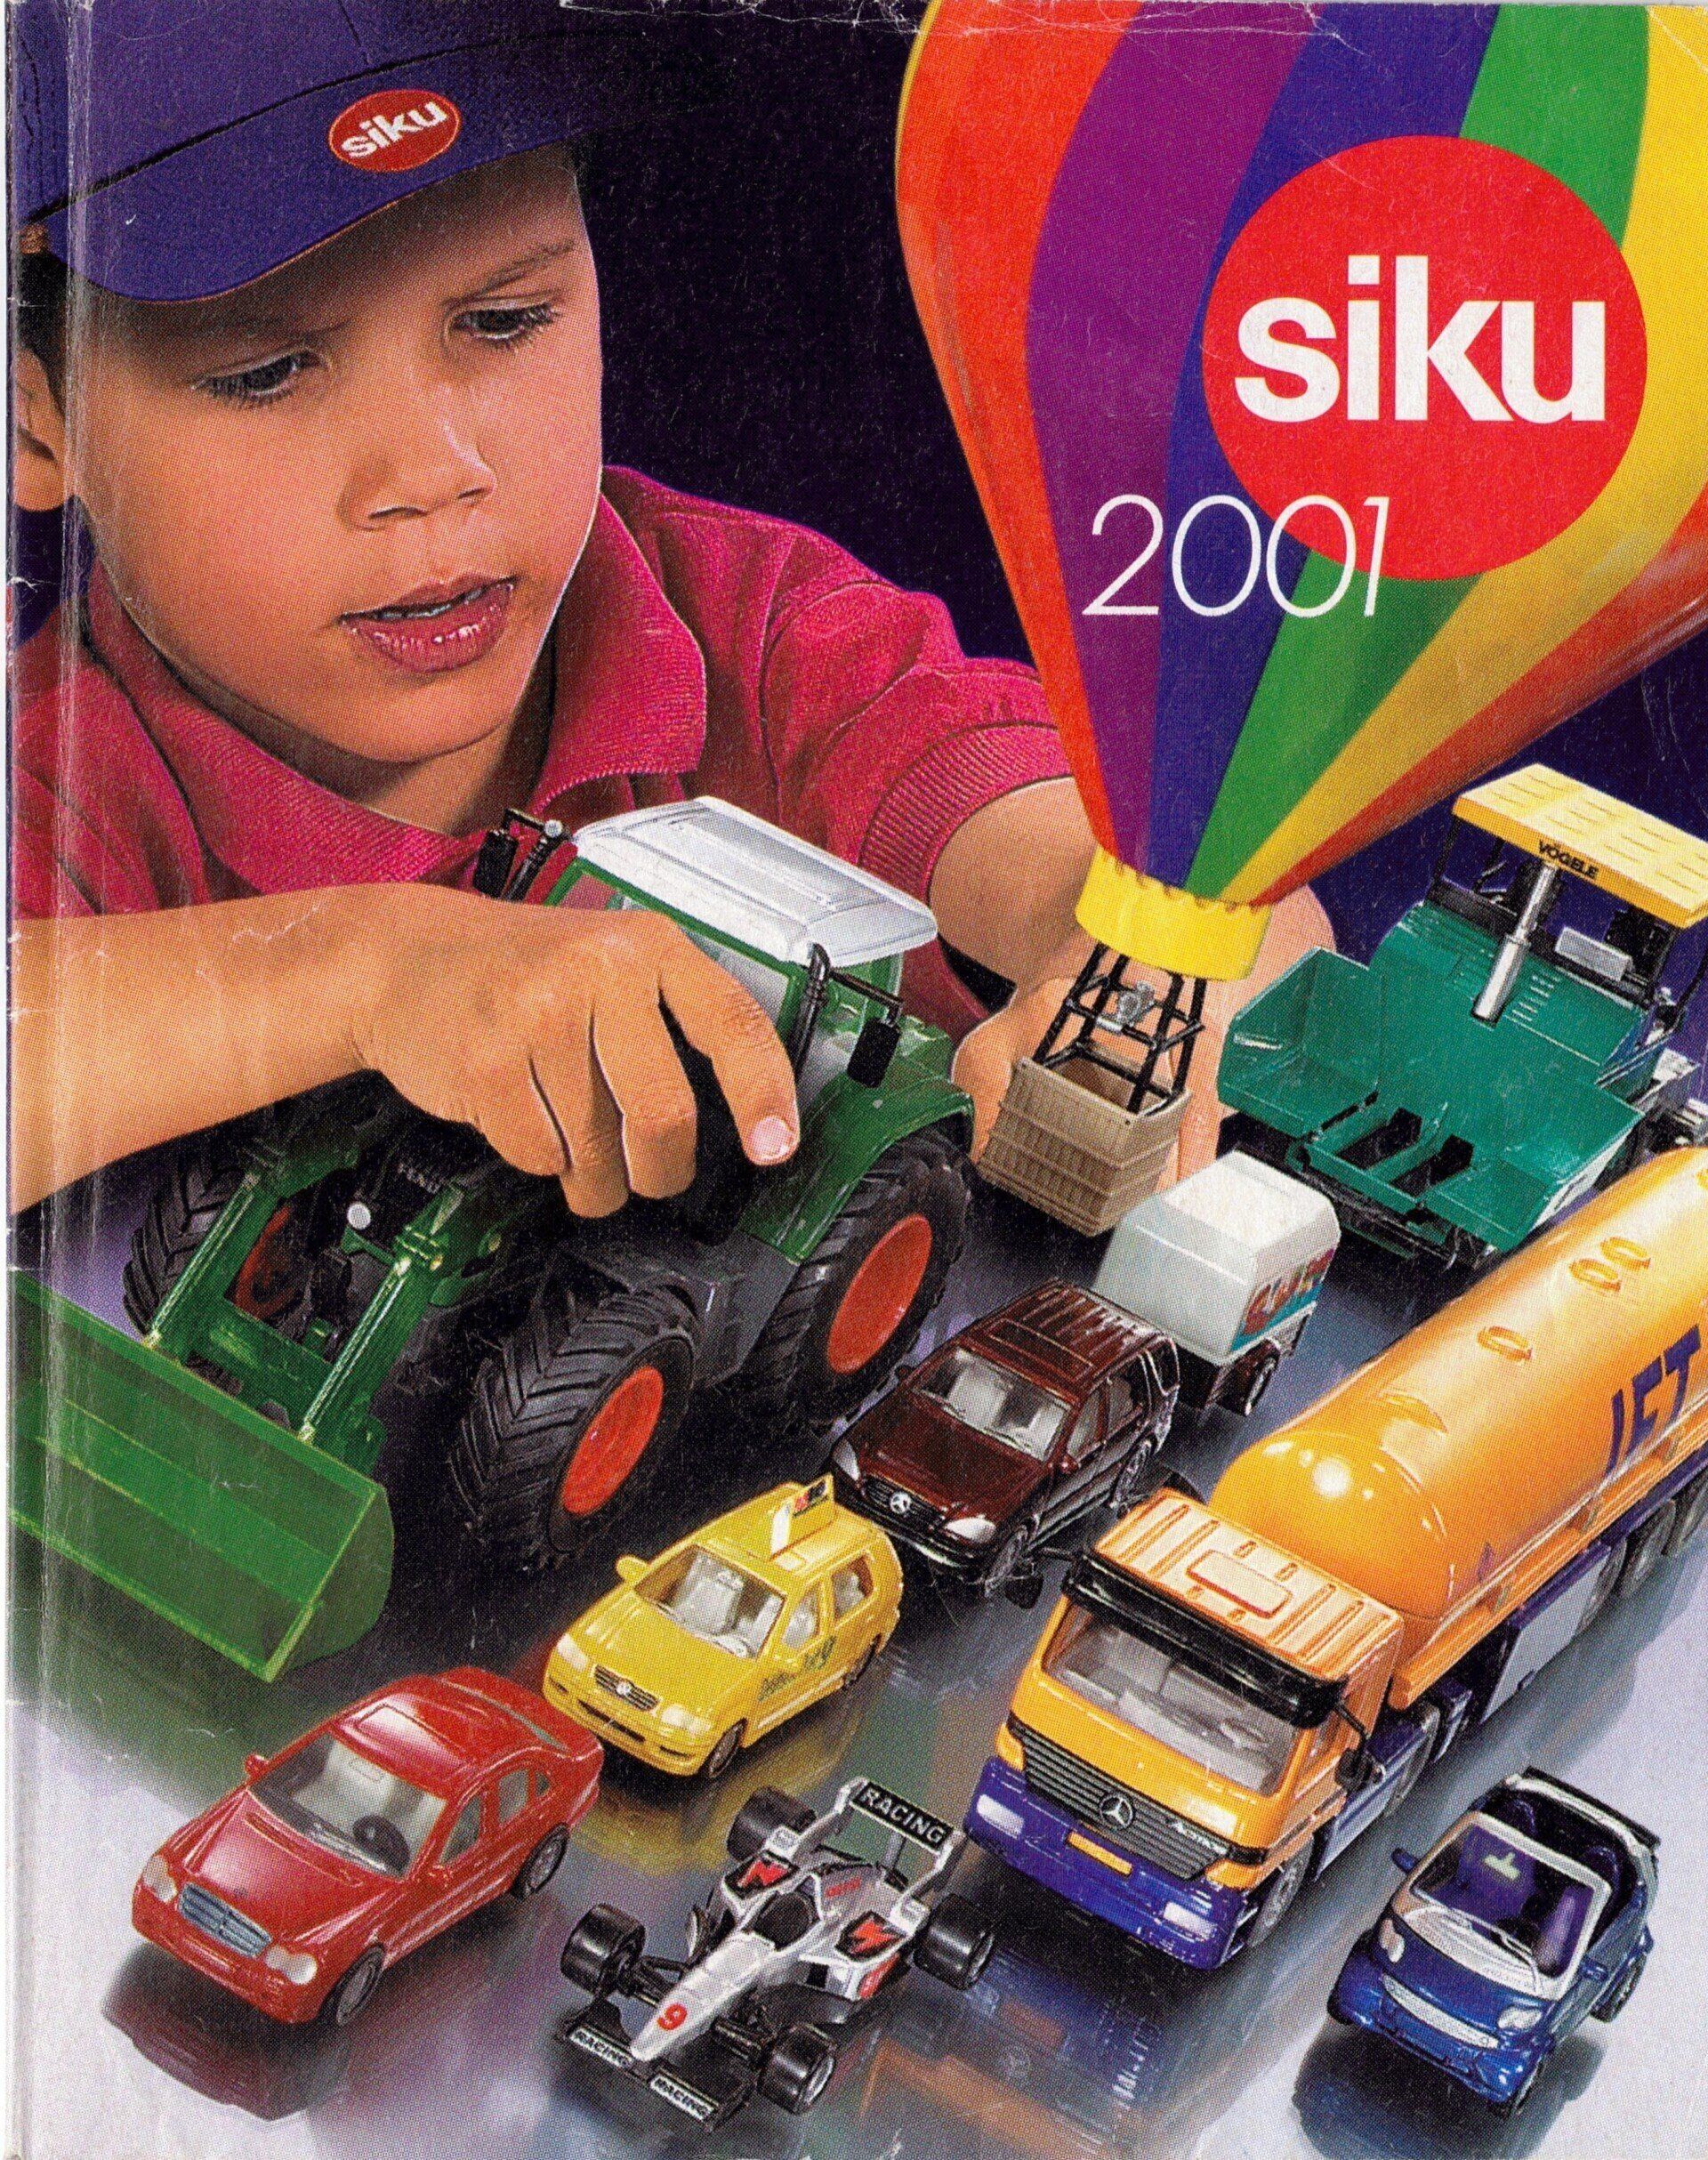 Siku catalogue 2001